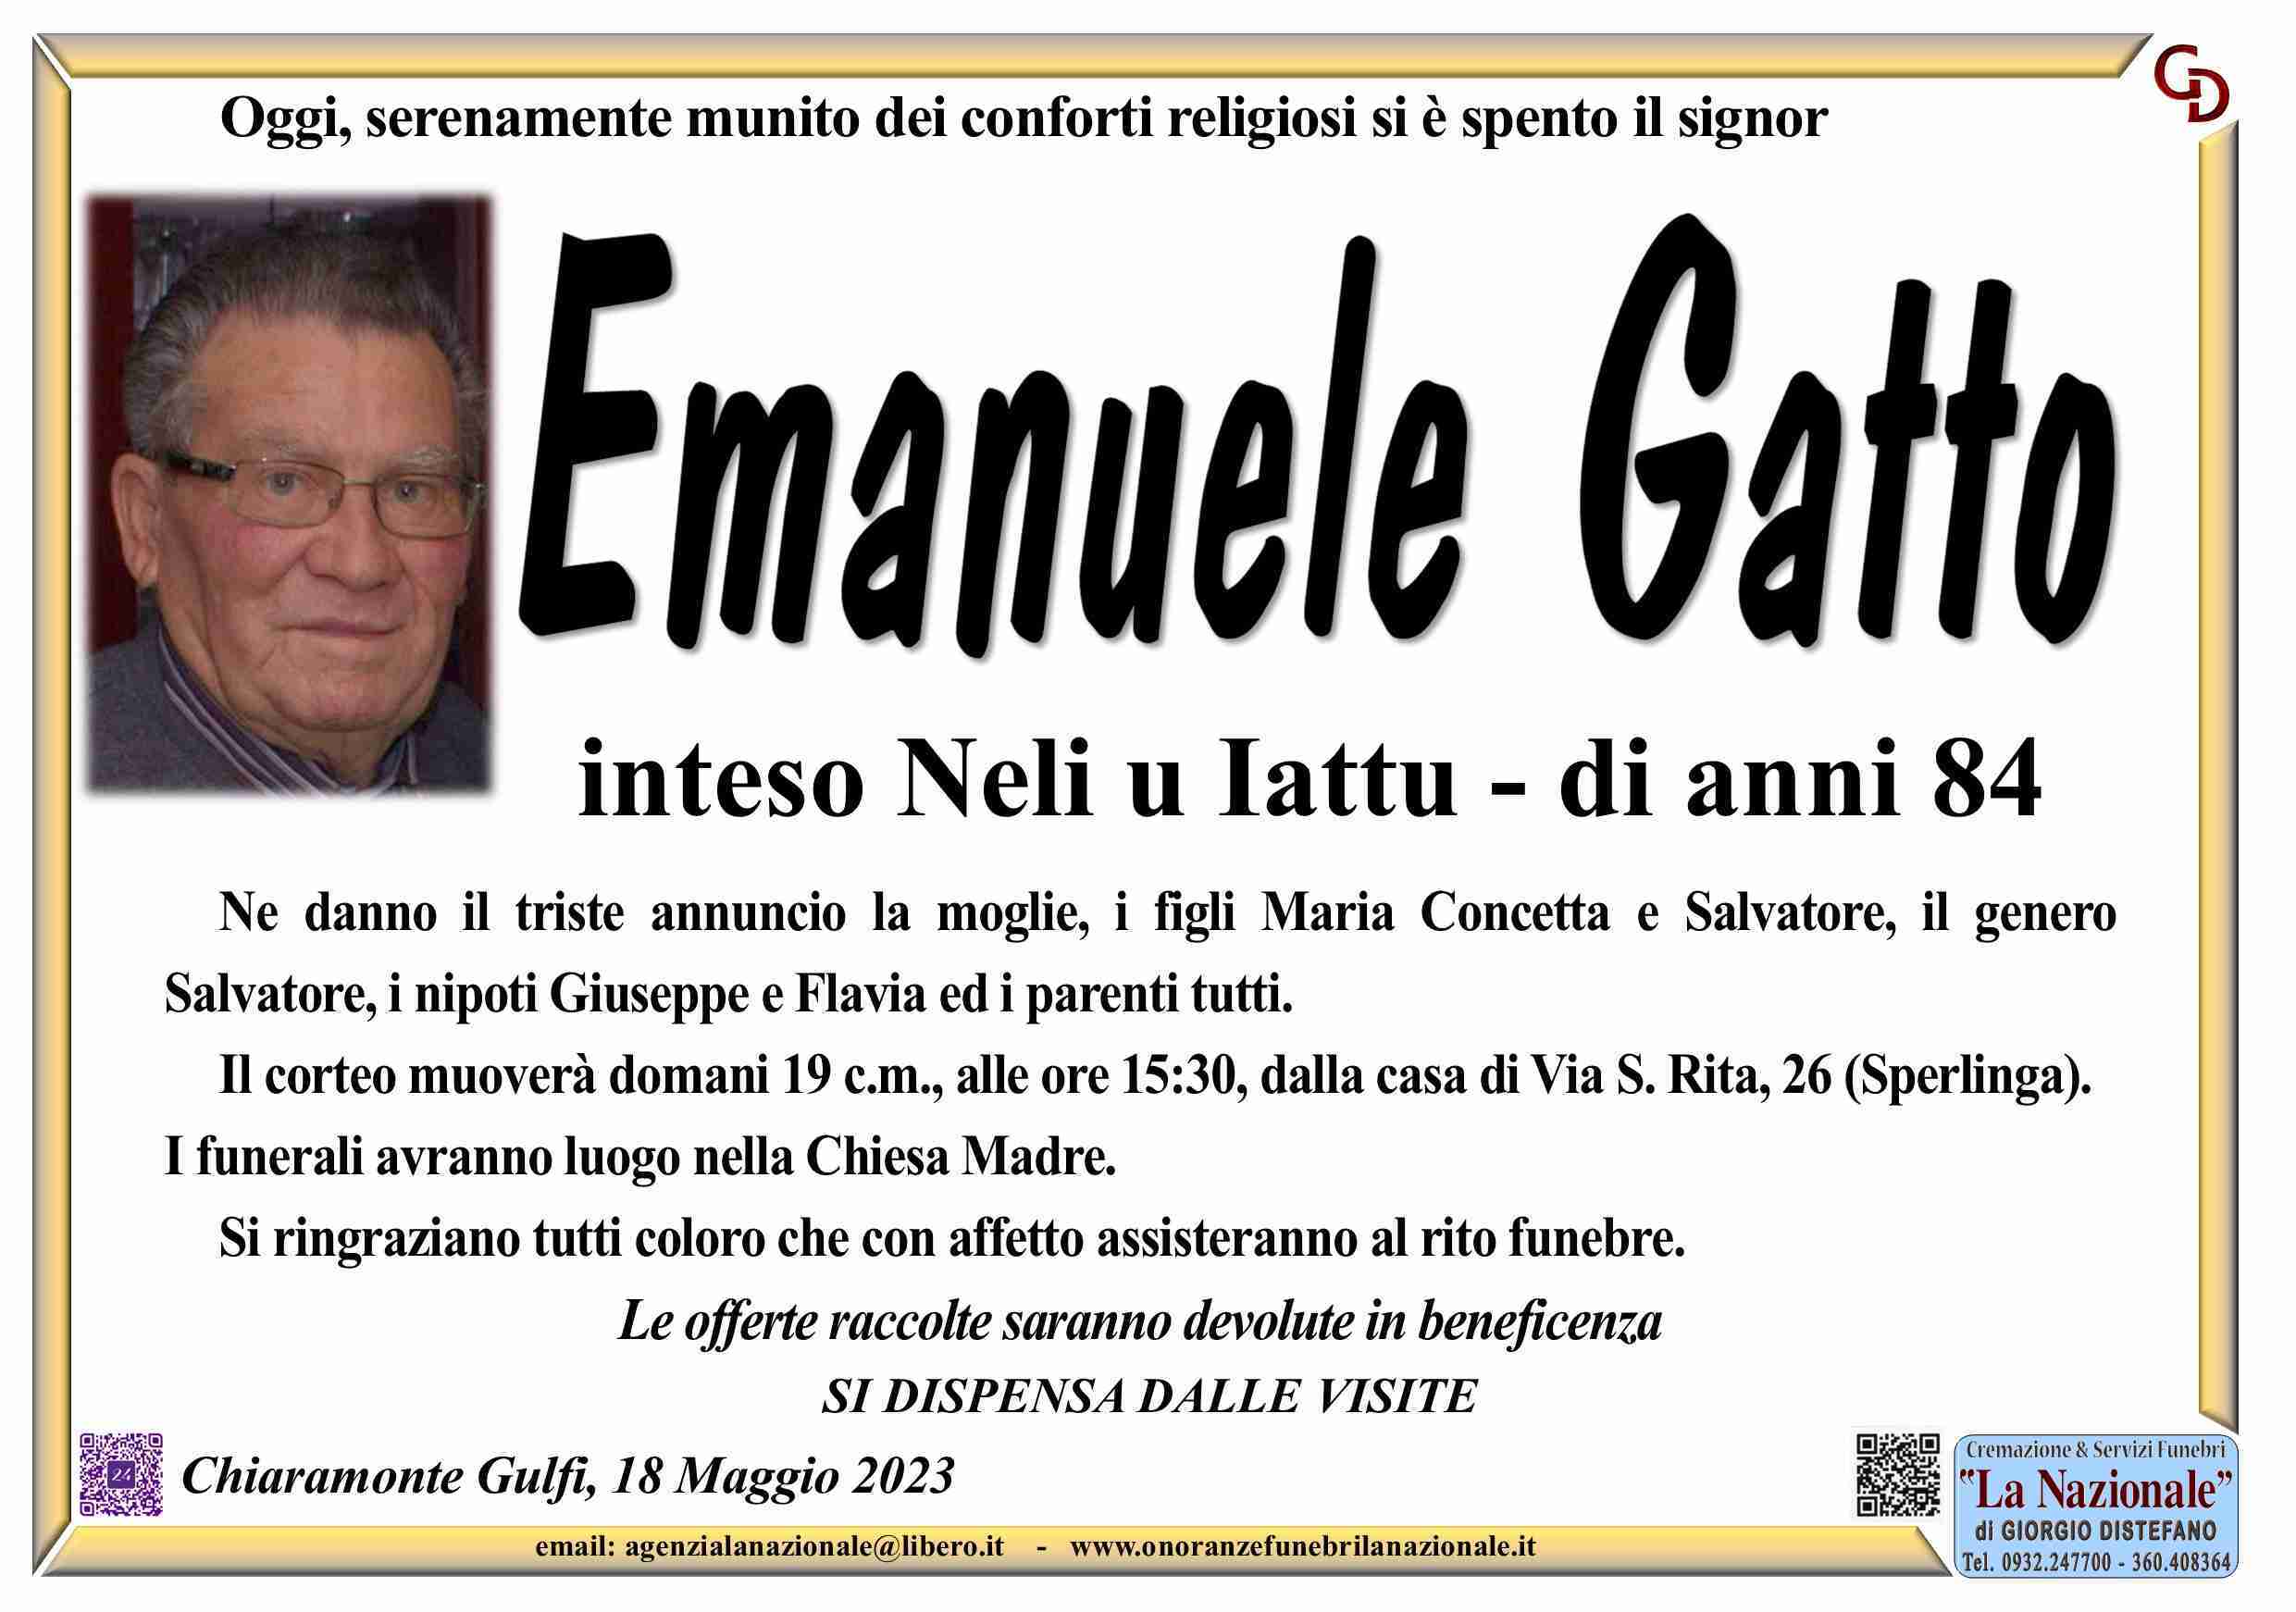 Emanuele Gatto